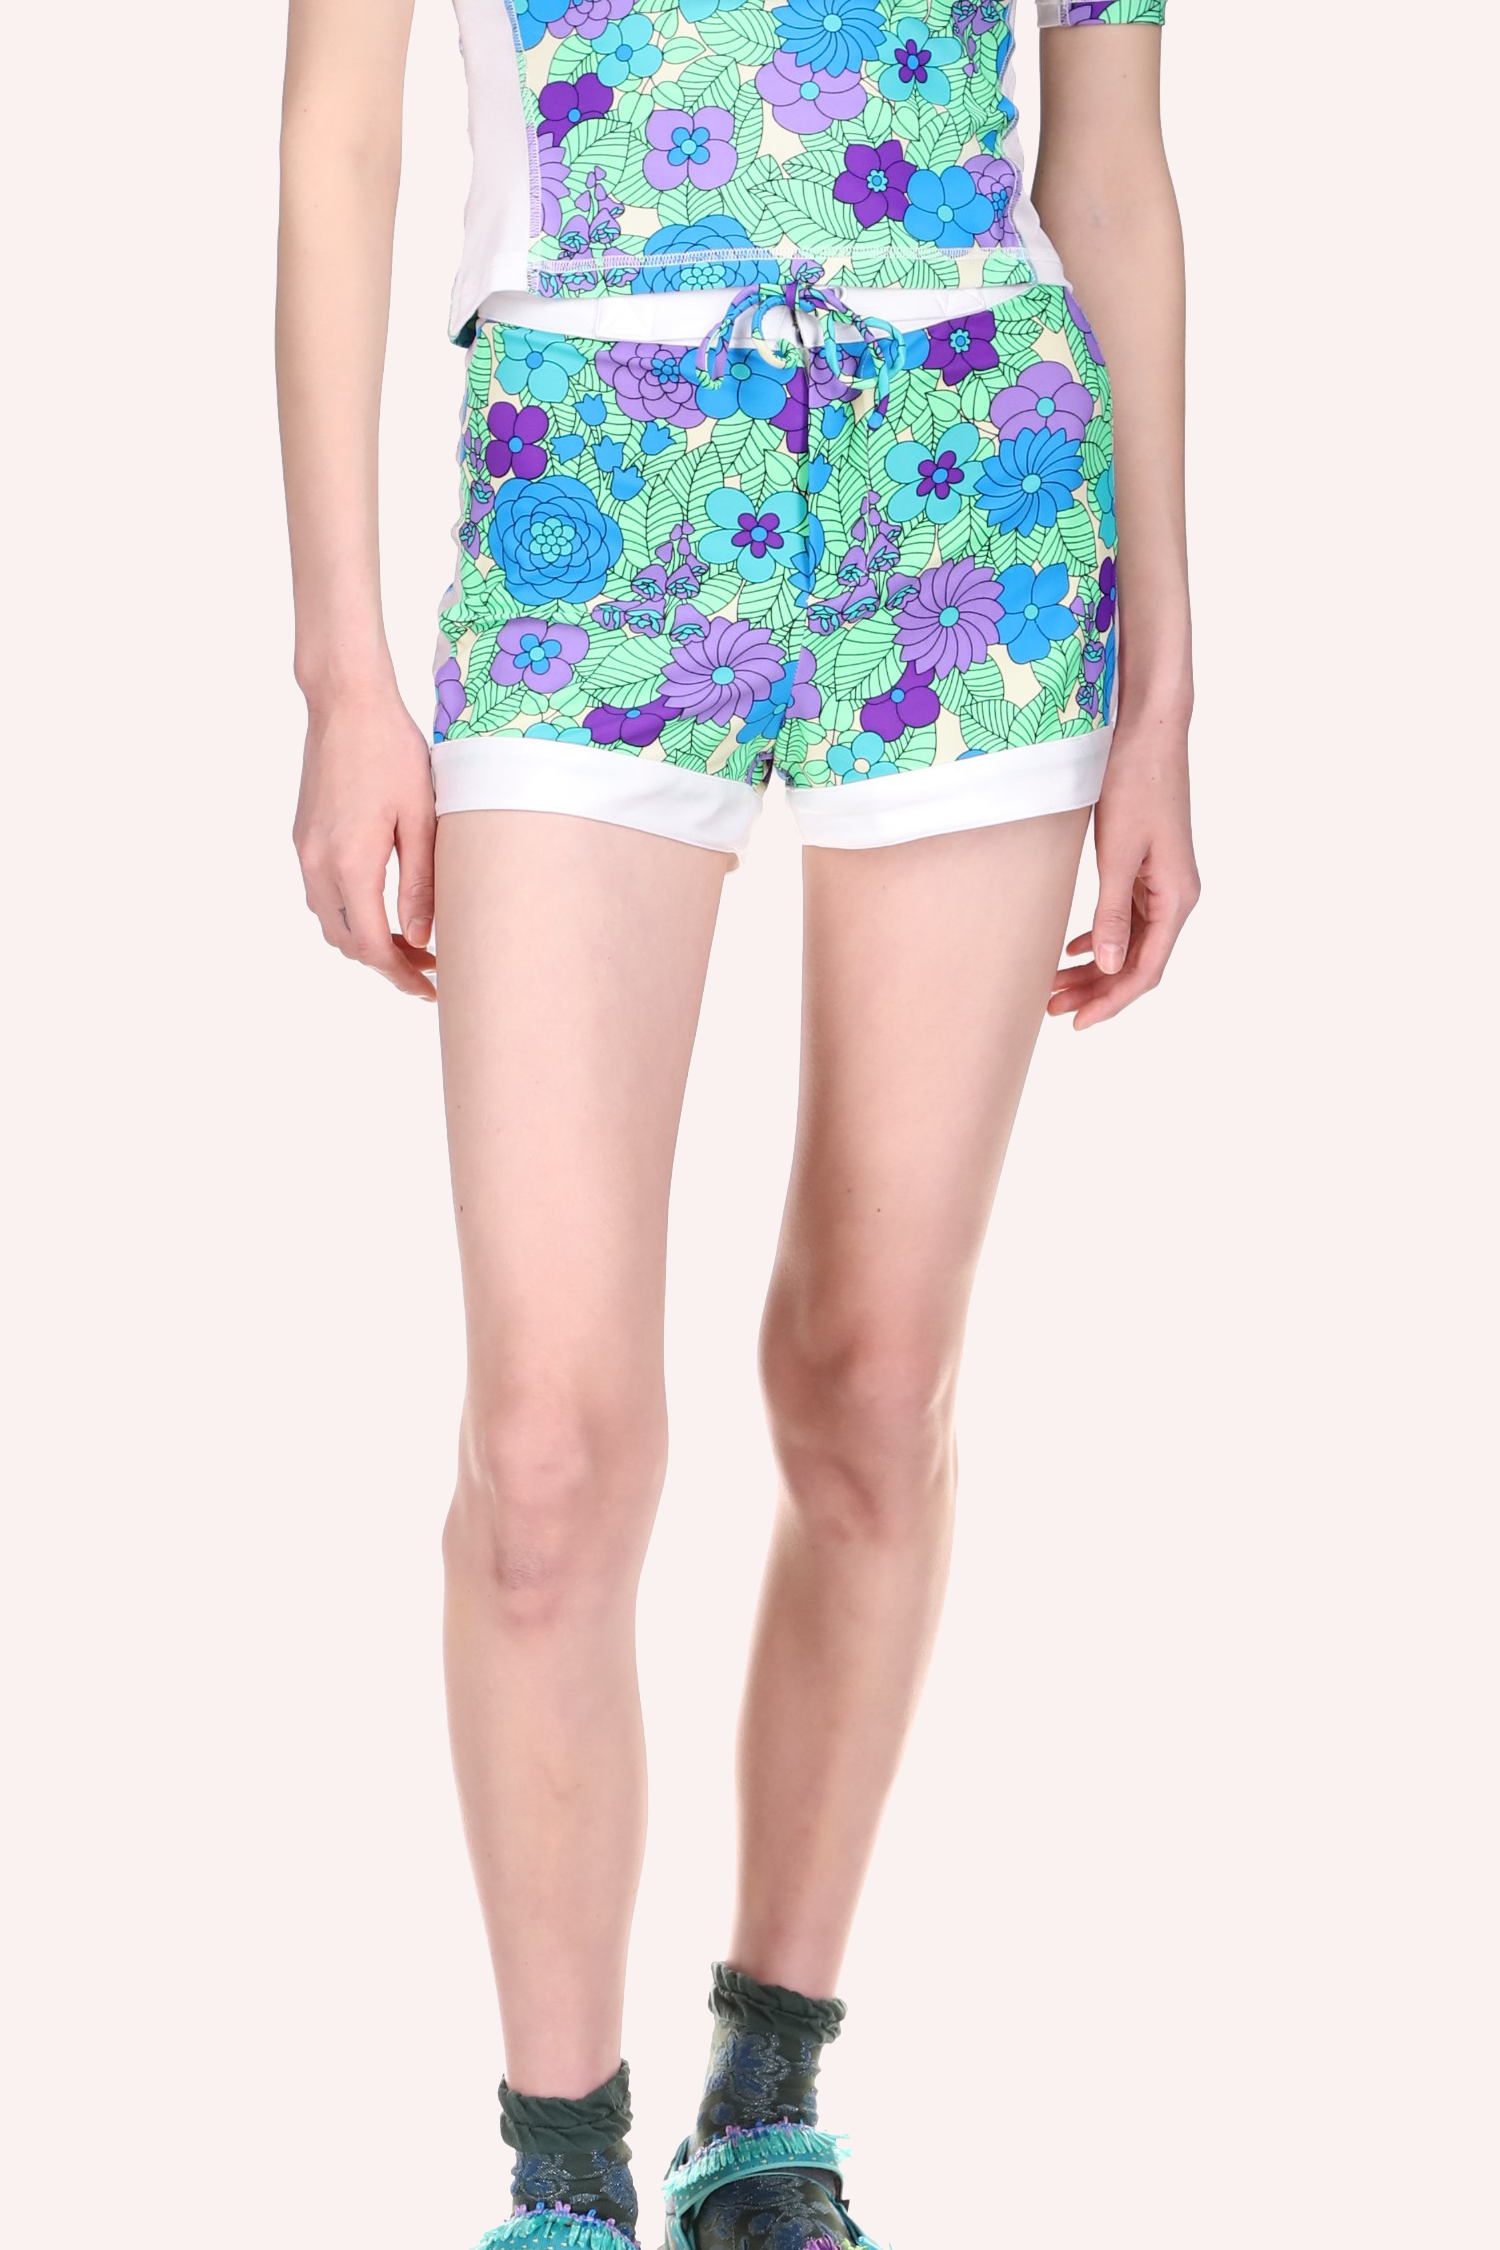 Pantalón corto de surf Beckoning Blossoms, largo medio ajustado, diseño floral en azul, una banda blanca en el dobladillo inferior